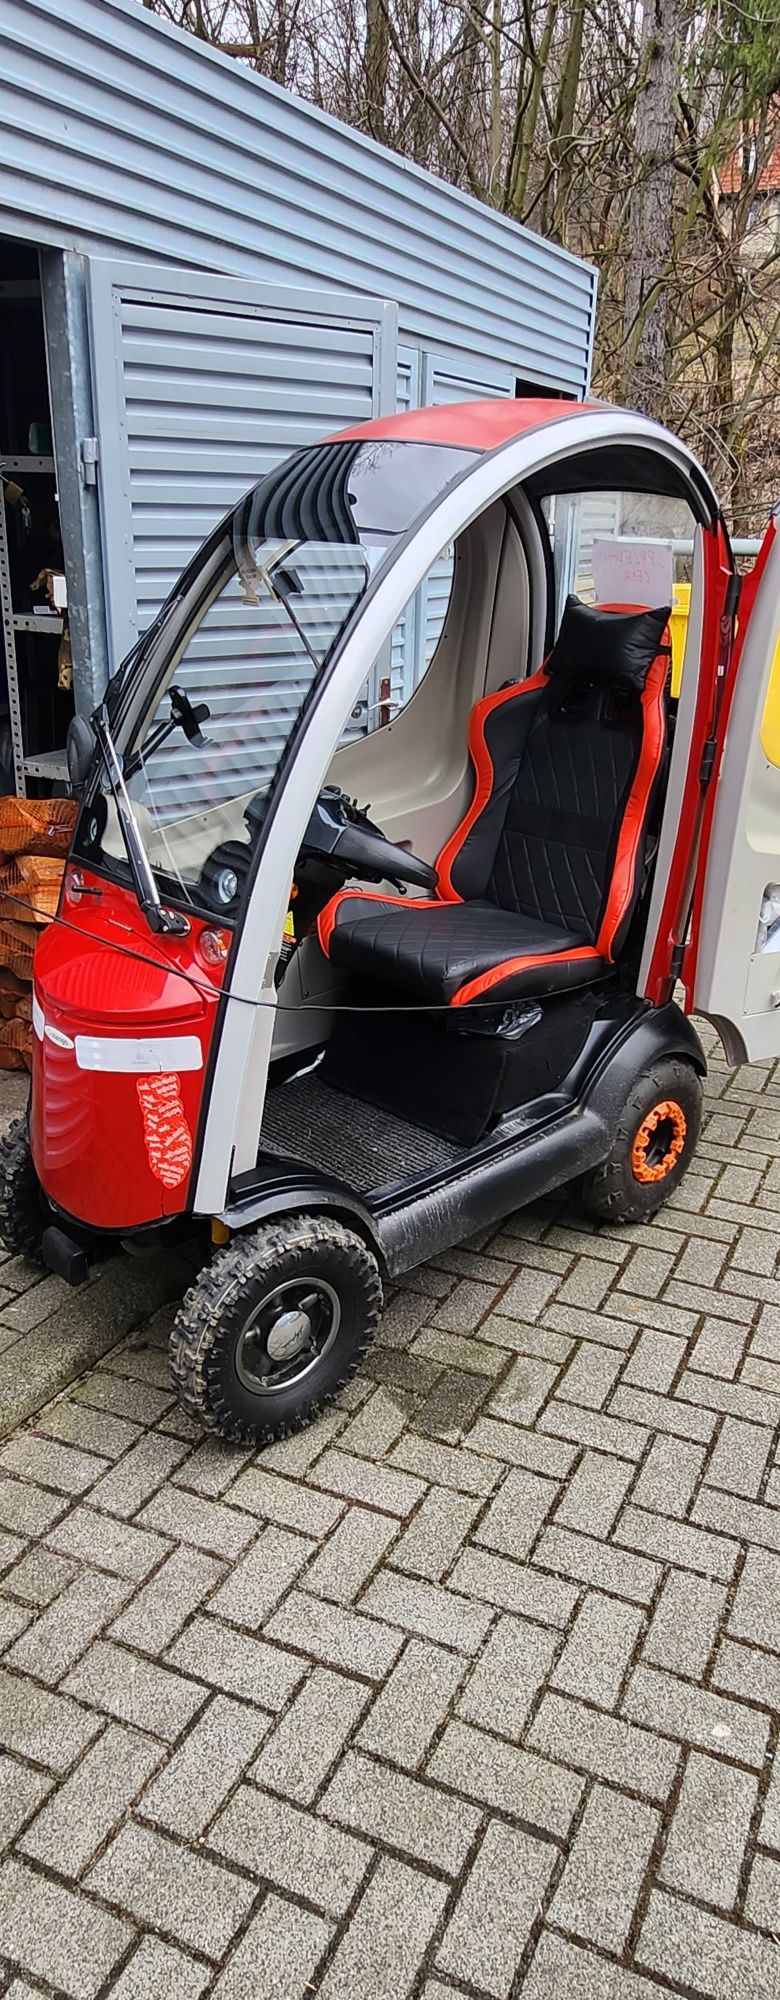 Shoprider turbo wózek inwalidzki elektryczny